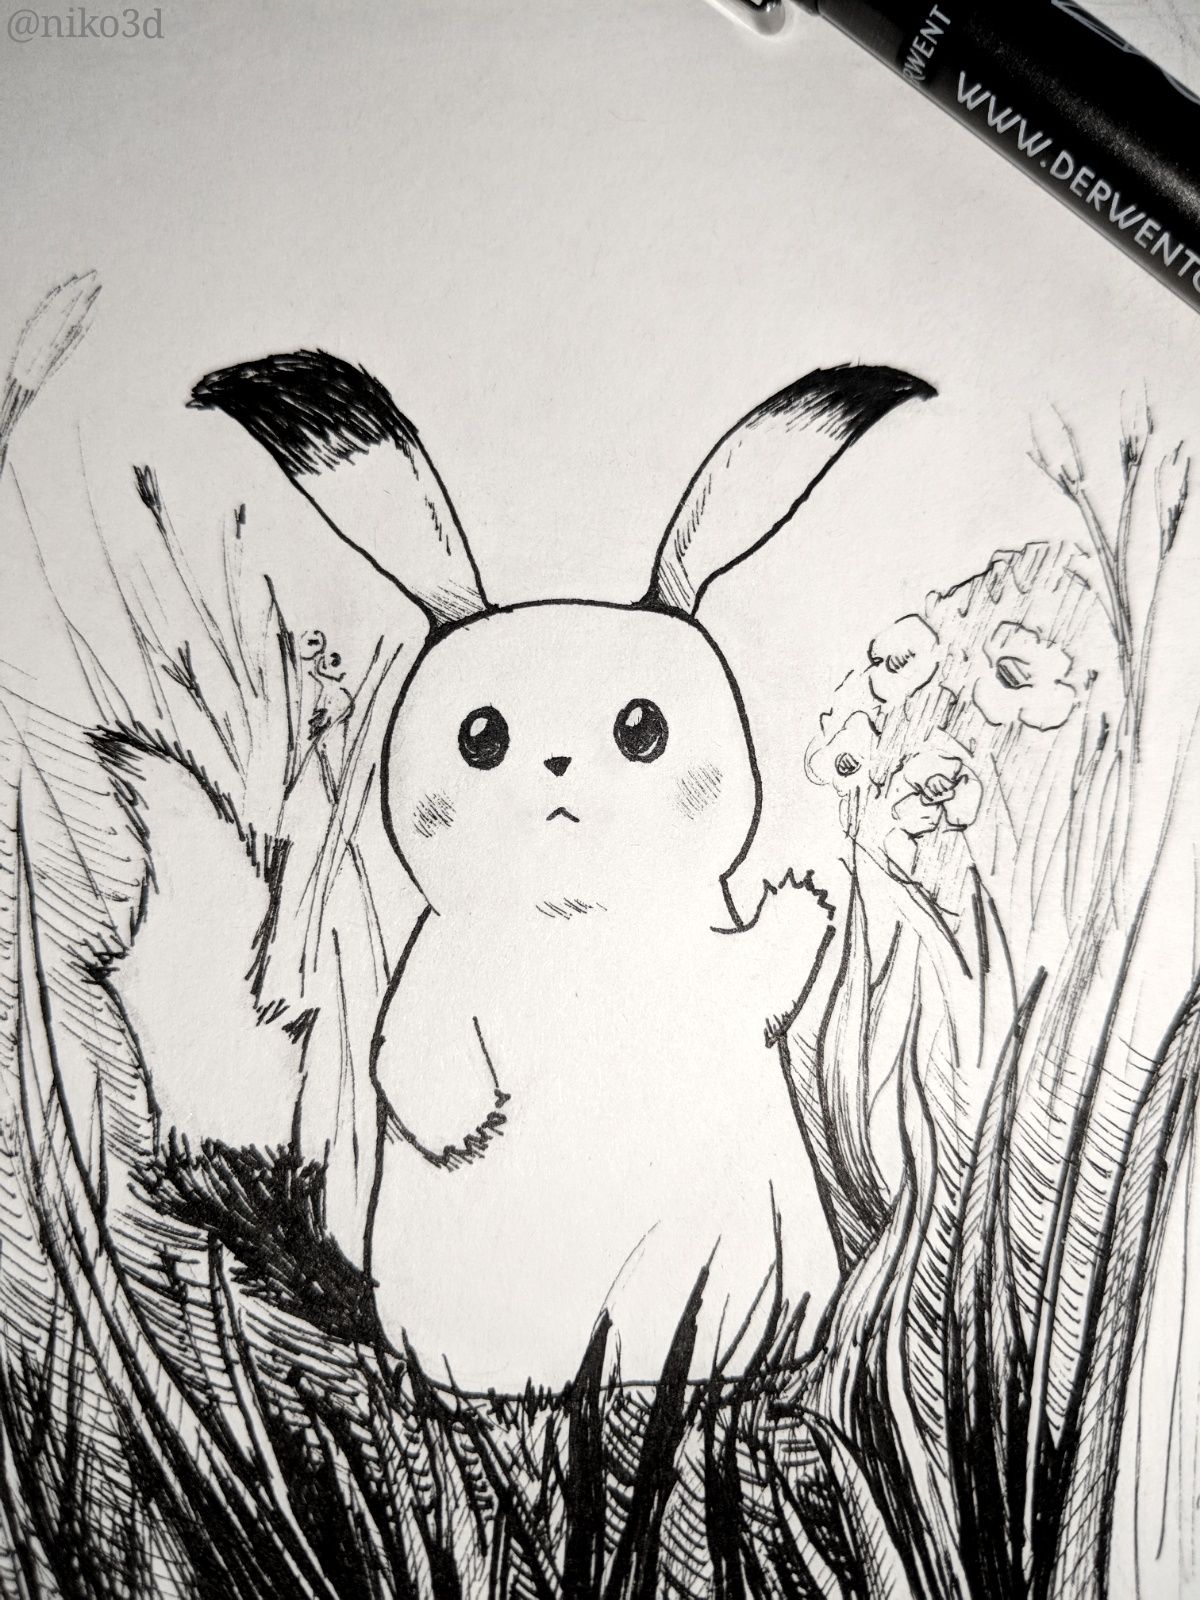 My Artbook - Pencil Sketch (Pikachu) - Wattpad